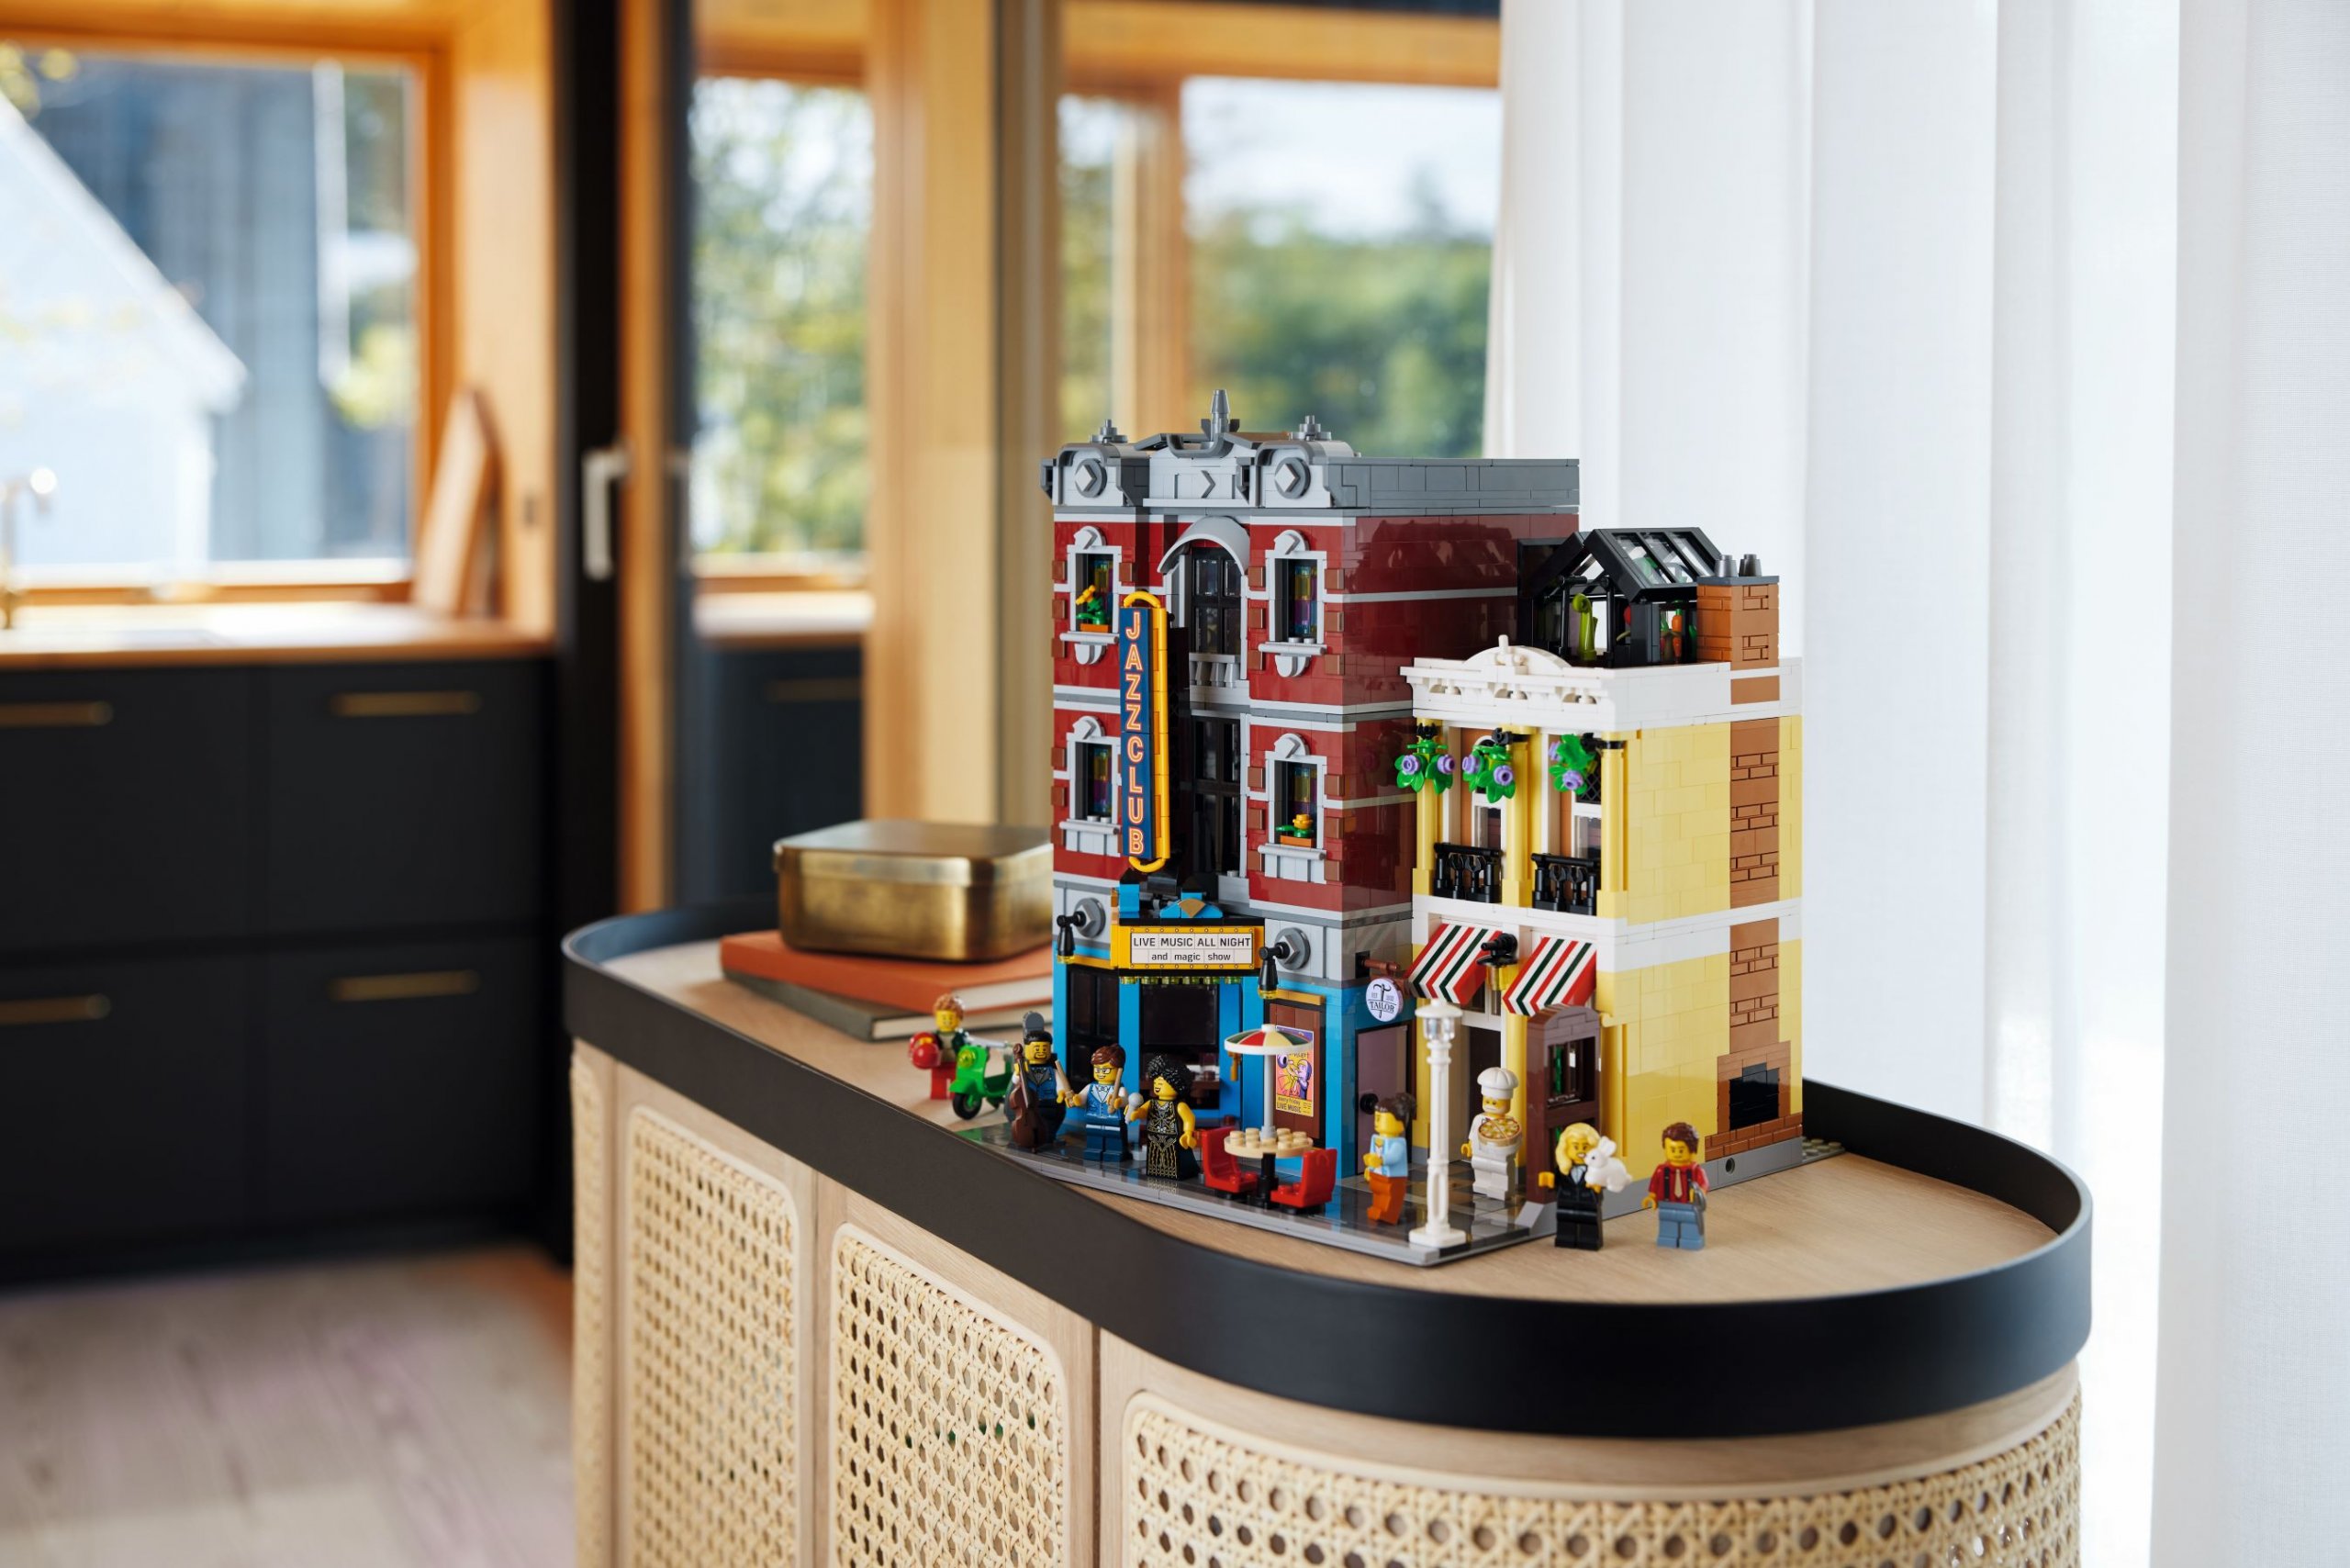 LEGO kondigt de LEGO Icons Jazzclub aan als de nieuwe modular voor 2023